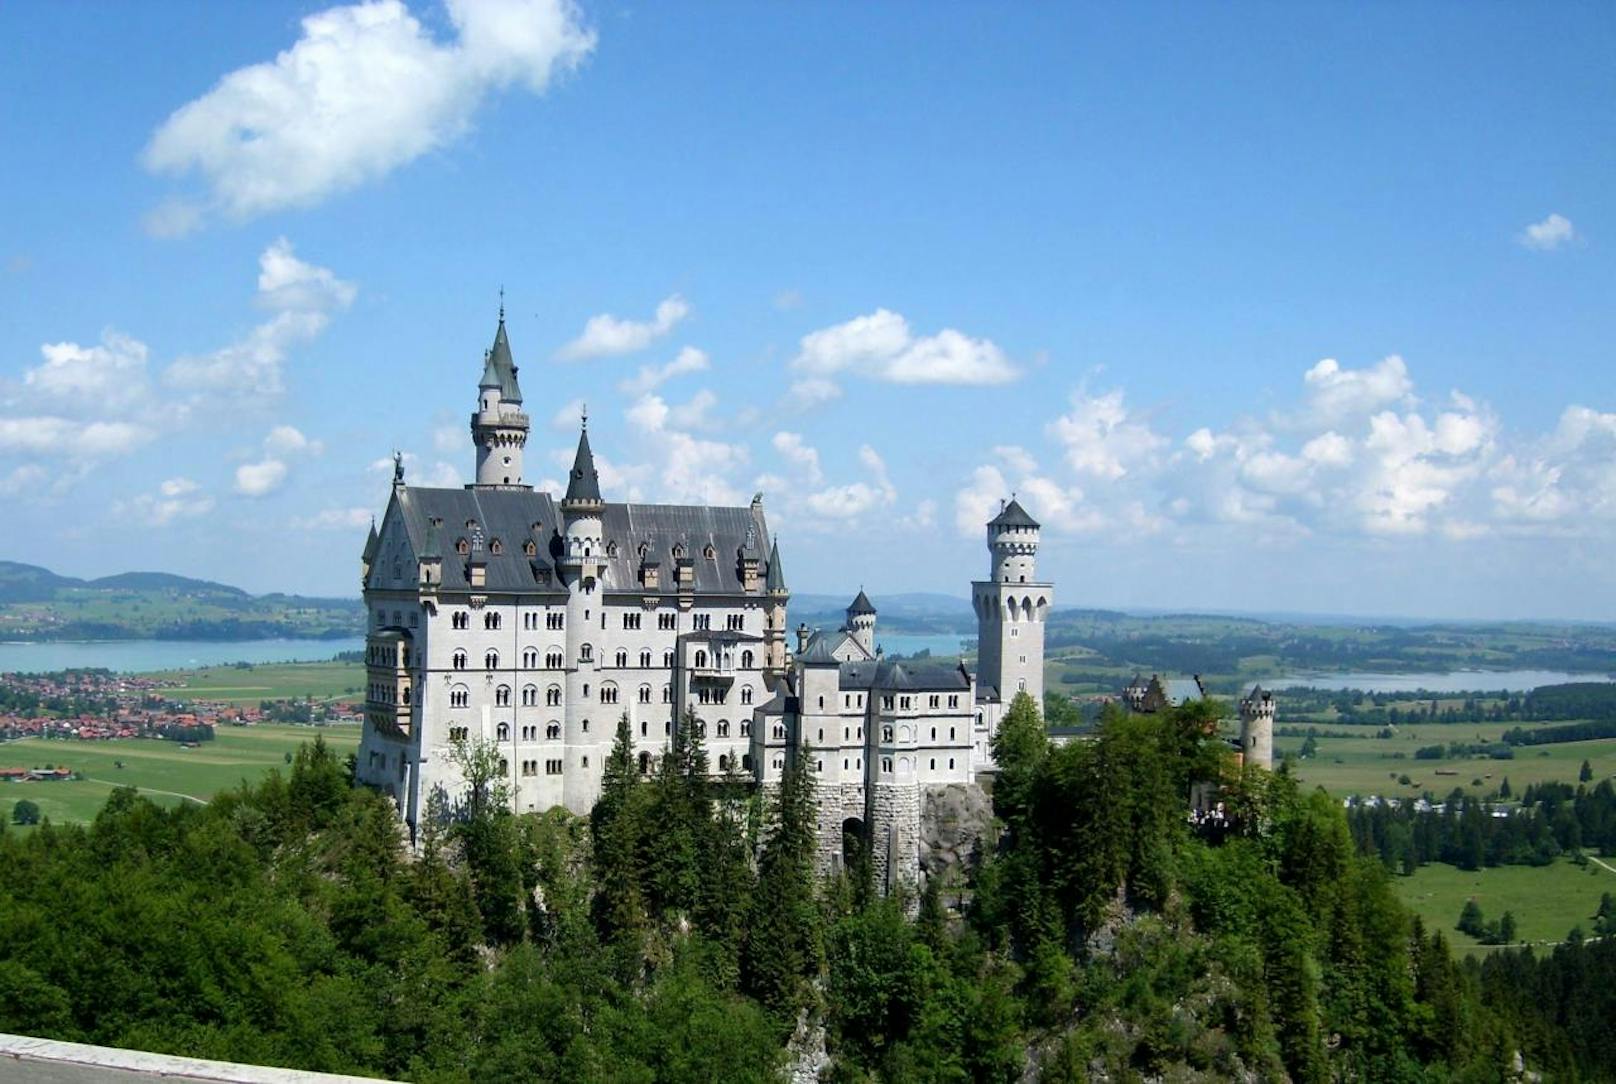 <b>Schloss Neuschwanstein in Bayern:</b>
Mit Schloss Neuschwanstein verwirklichte sich der bayerische Märchenkönig Ludwig II. seine Idealvorstellung einer Burg. Seit der Fertigstellung 1869 inspirierte der Bau Filmkonzerne, wurde als Kulisse genutzt und mehrfach nachgebaut.